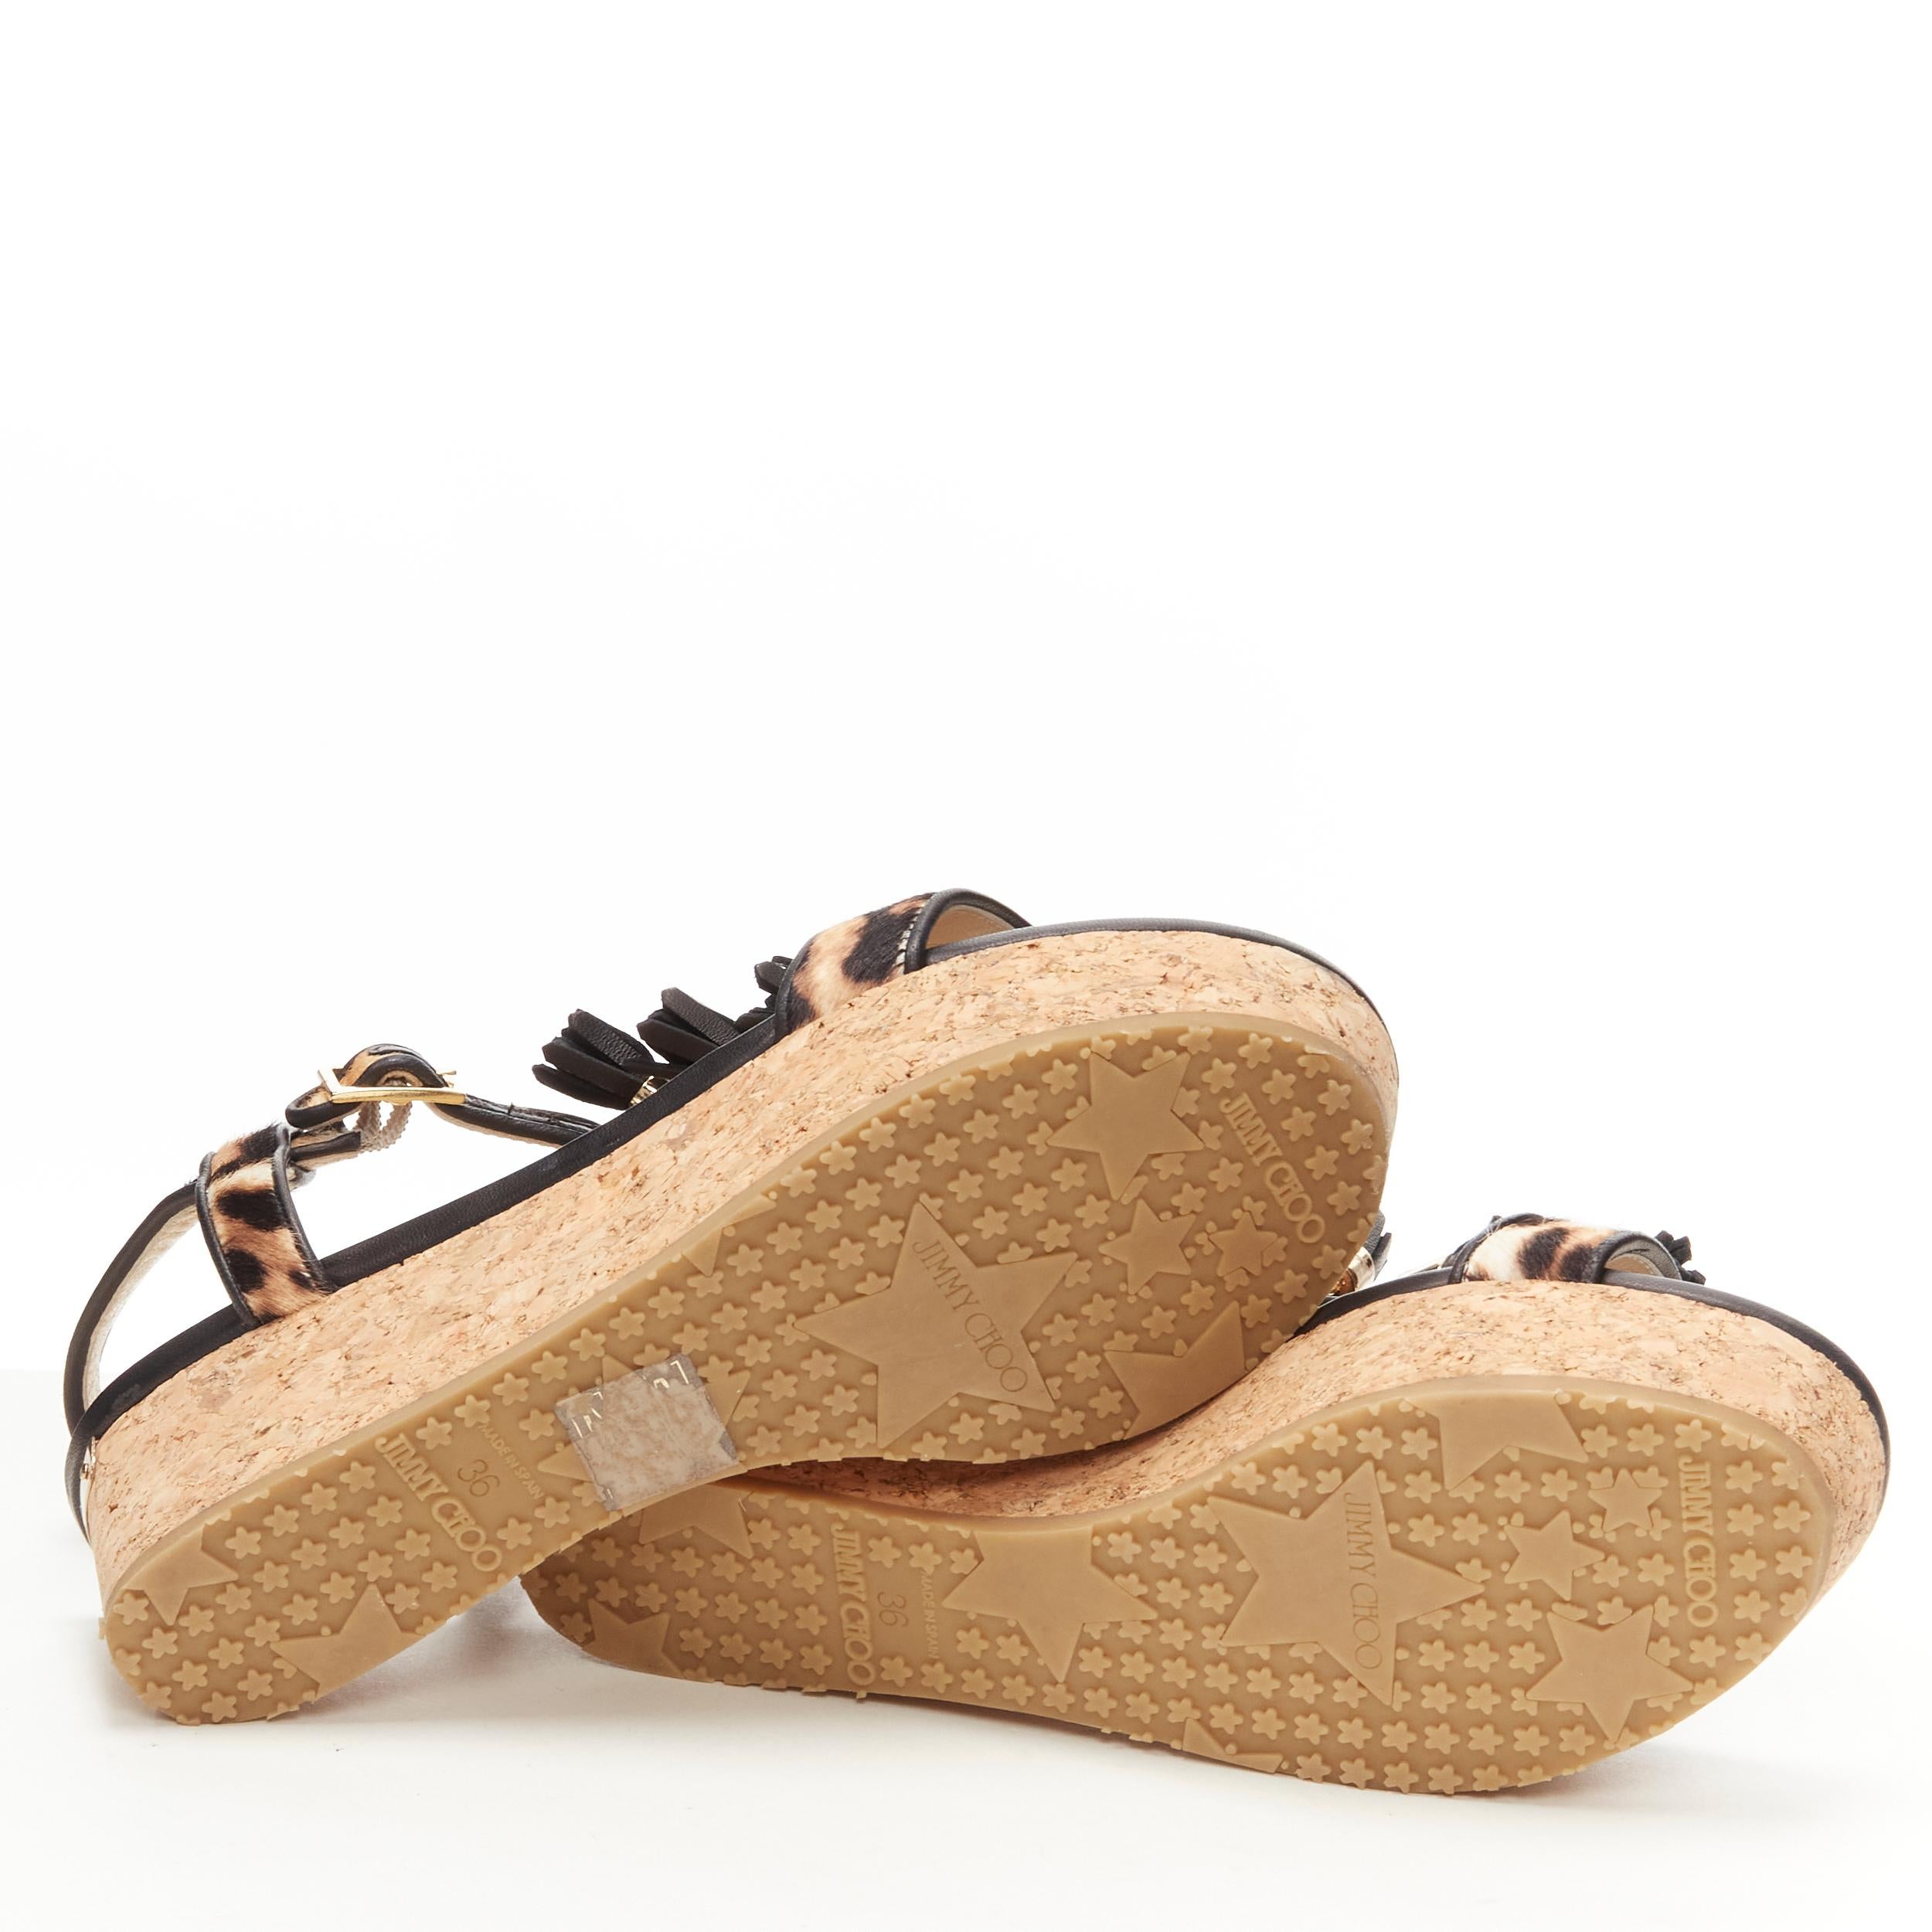 new JIMMY CHOO 141nerine leopard leather black tassel cork platform sandals EU36 For Sale 7